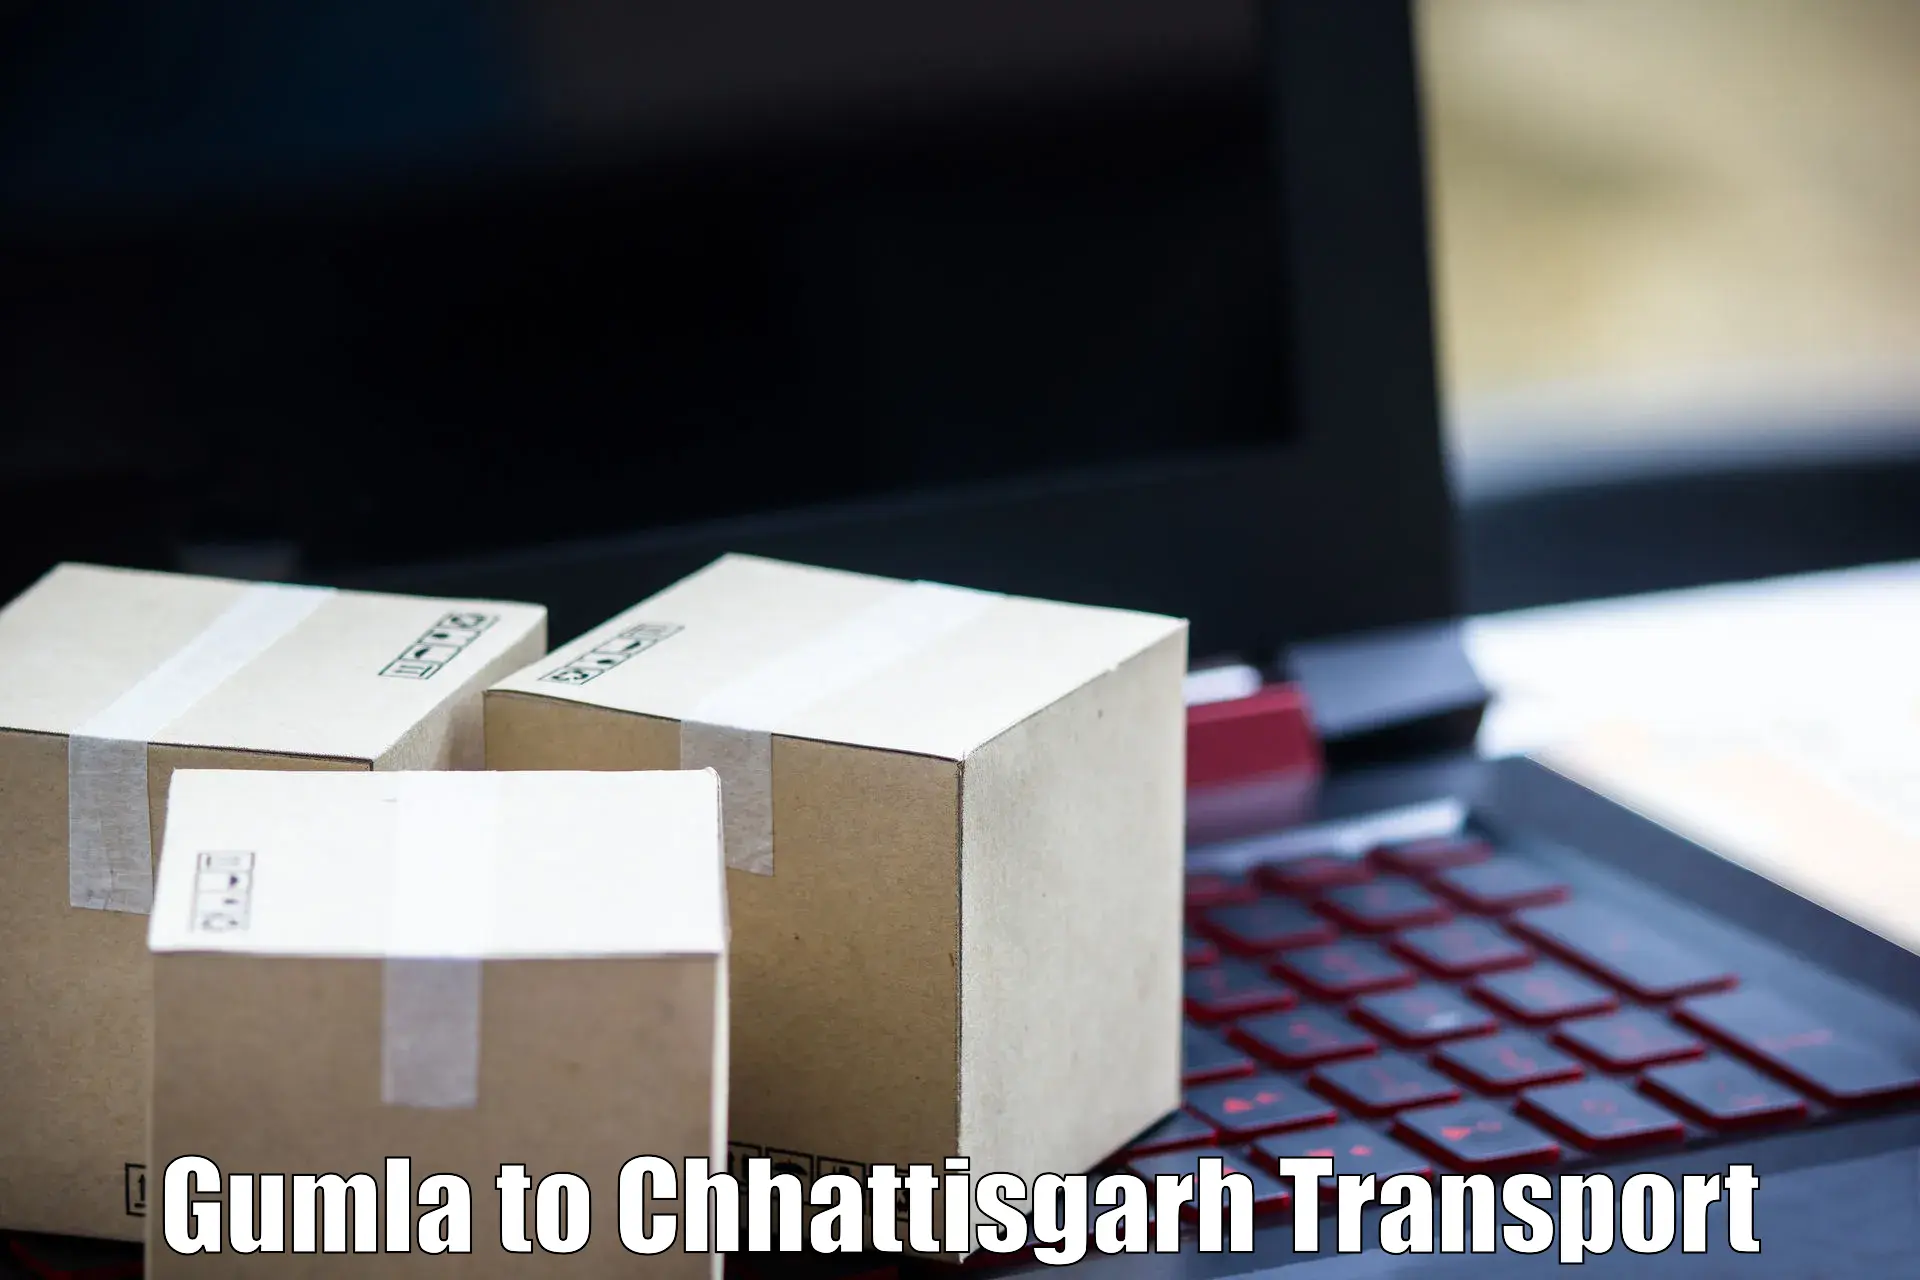 Nearest transport service Gumla to Bijapur Chhattisgarh